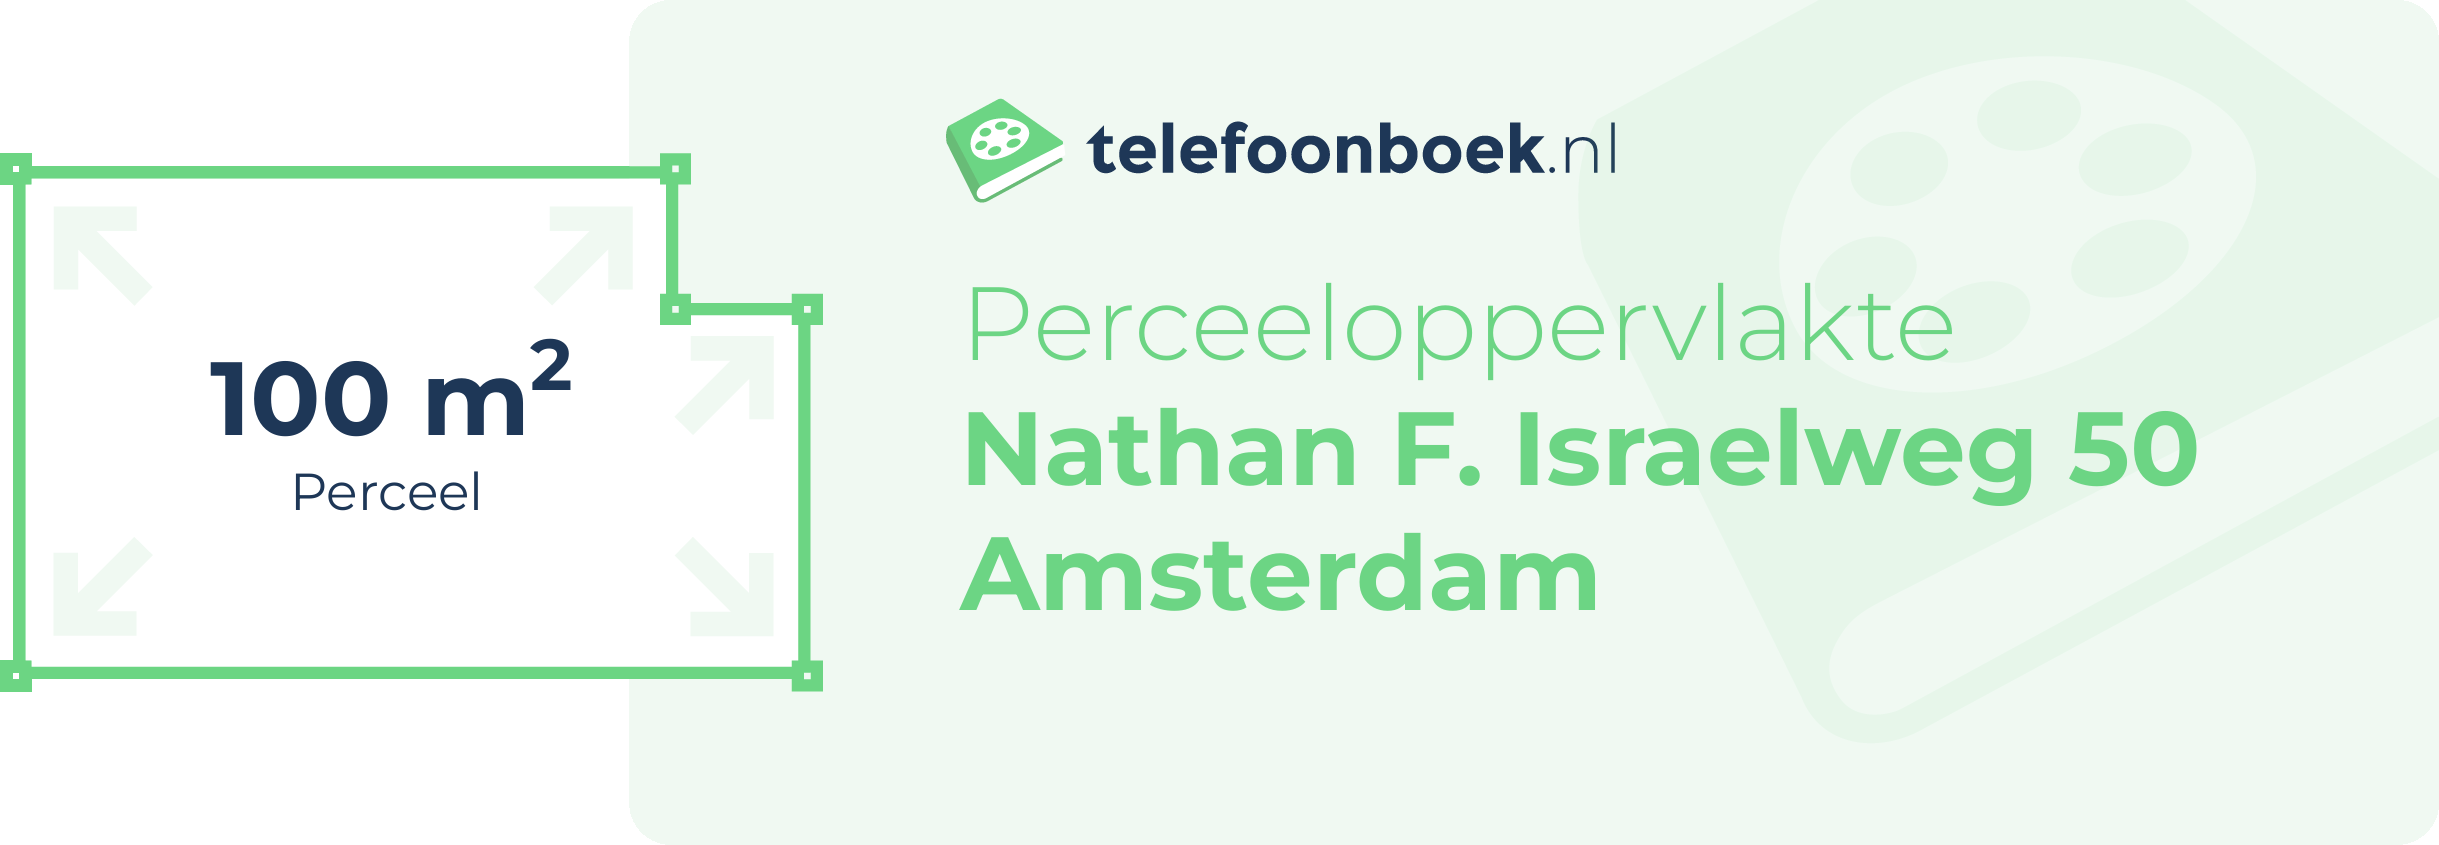 Perceeloppervlakte Nathan F. Israelweg 50 Amsterdam